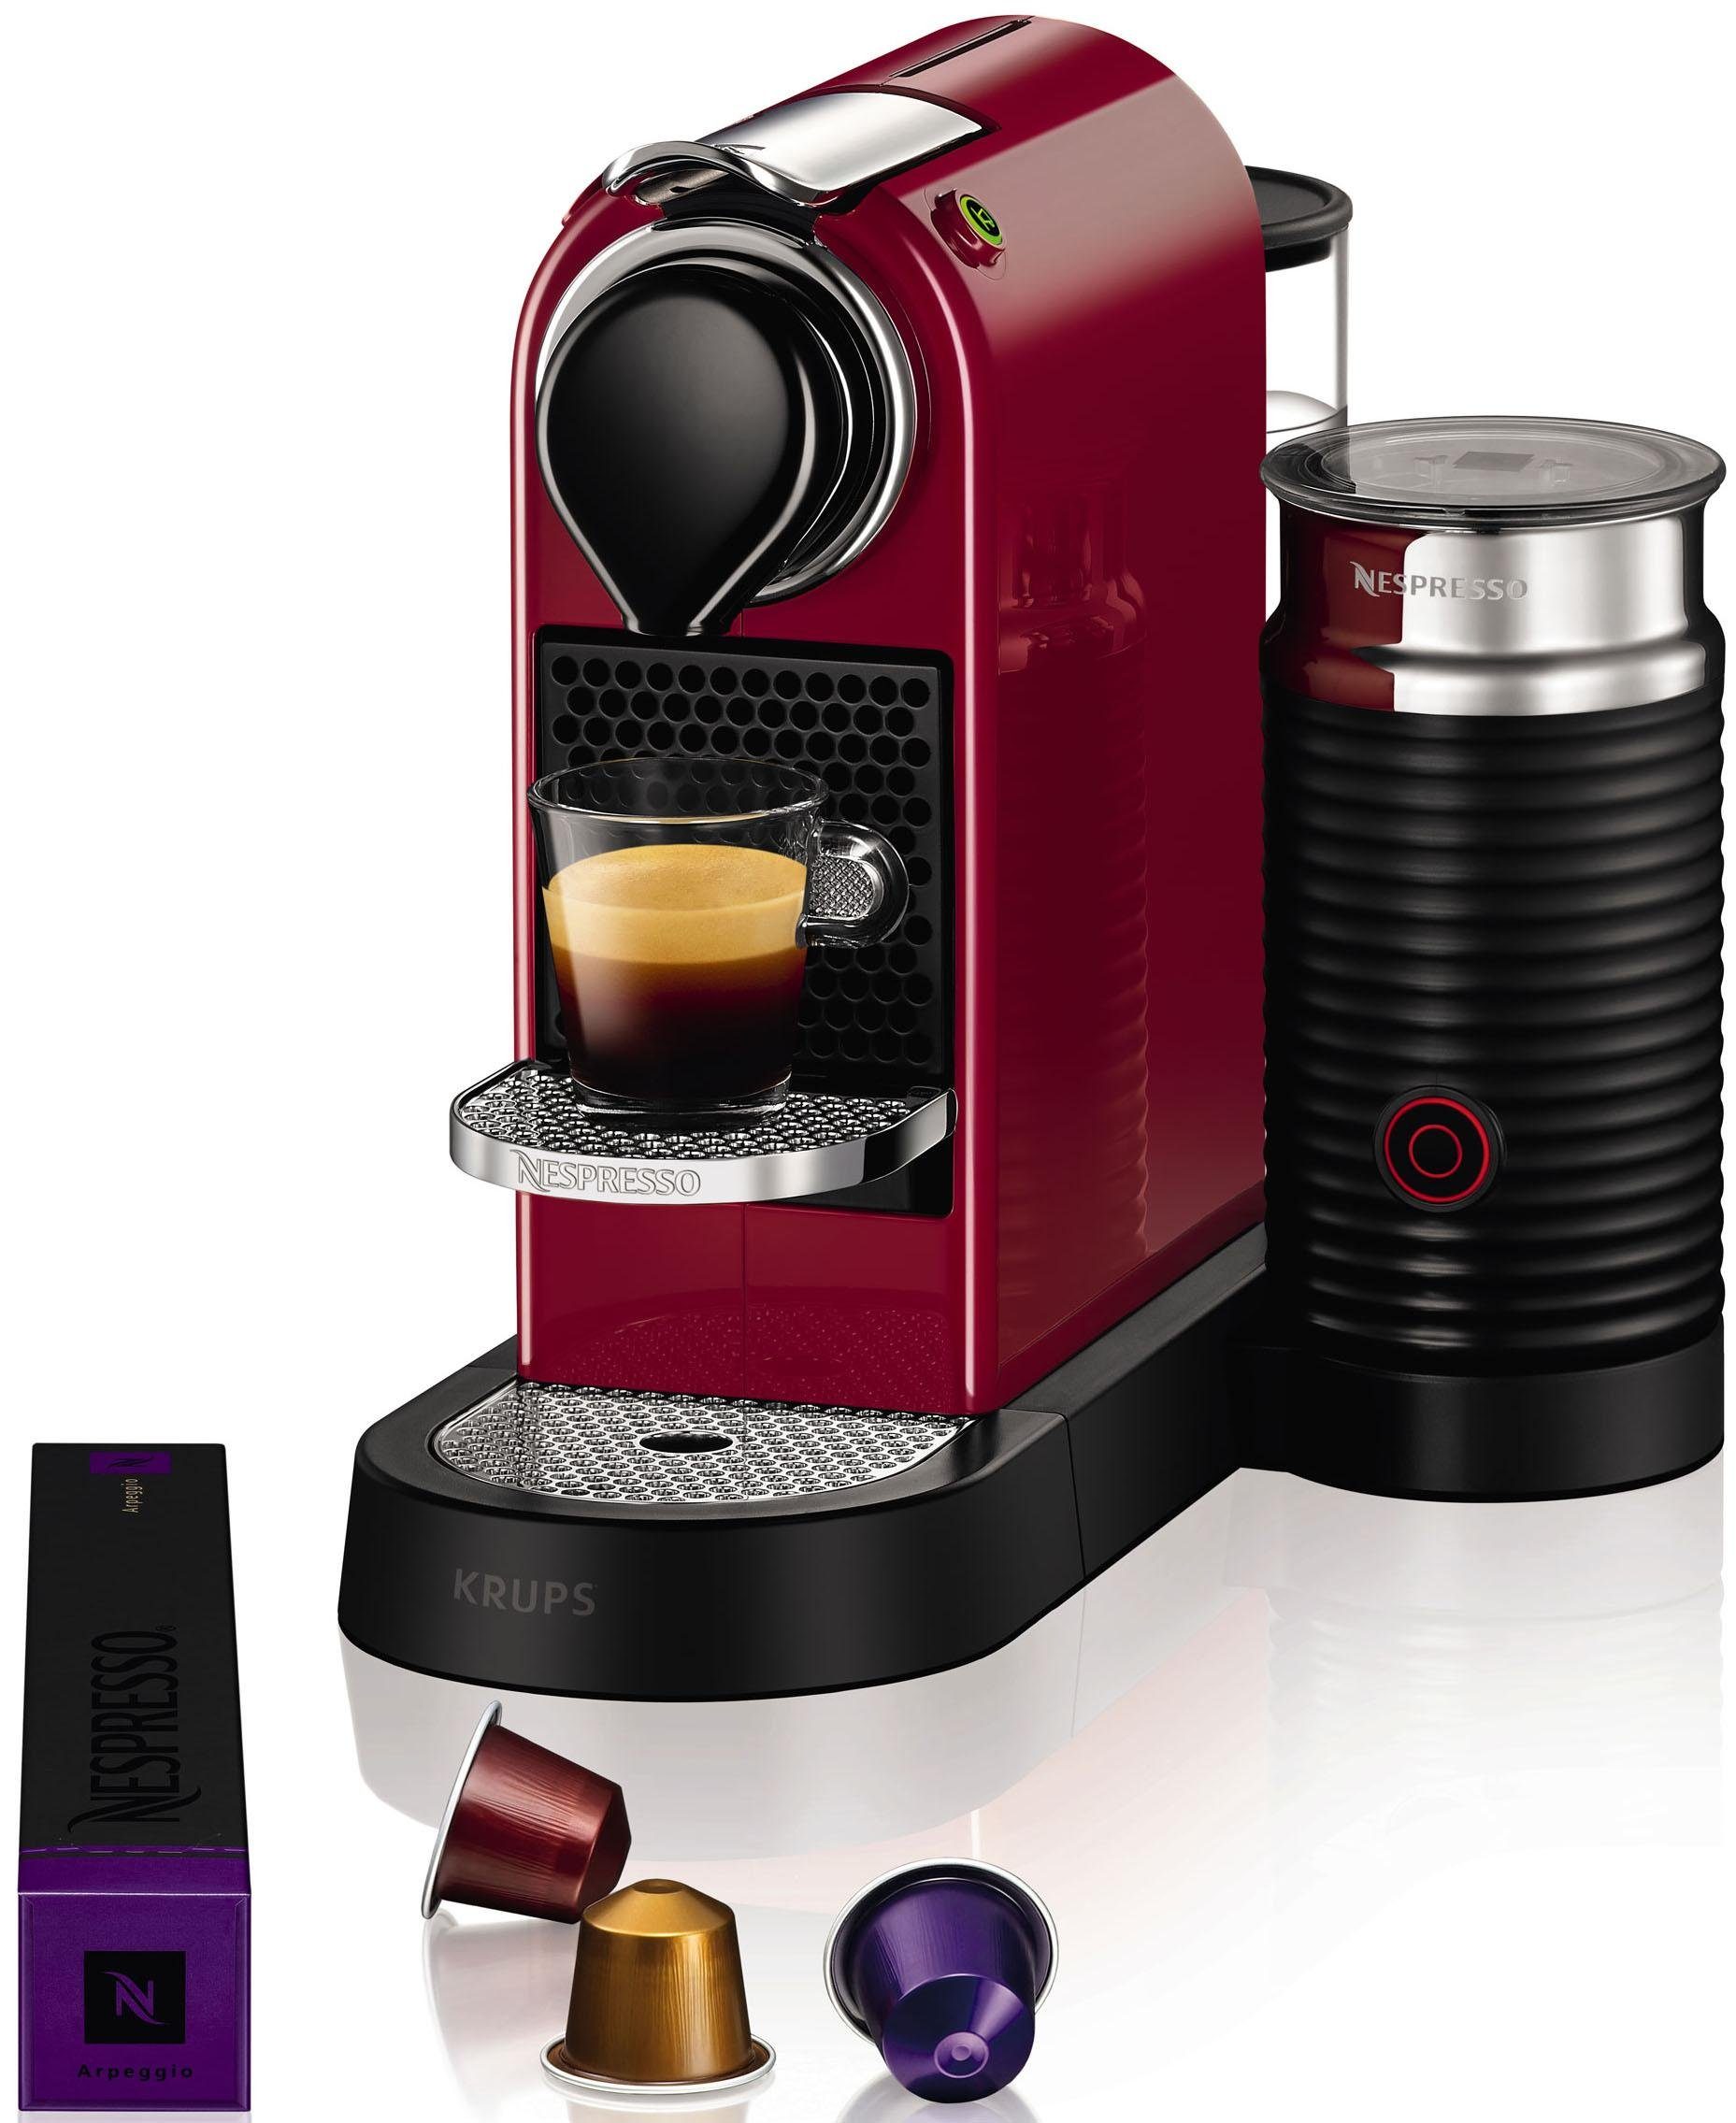 Nespresso-Maschine kaufen » Nespresso-Kaffeemaschine | OTTO